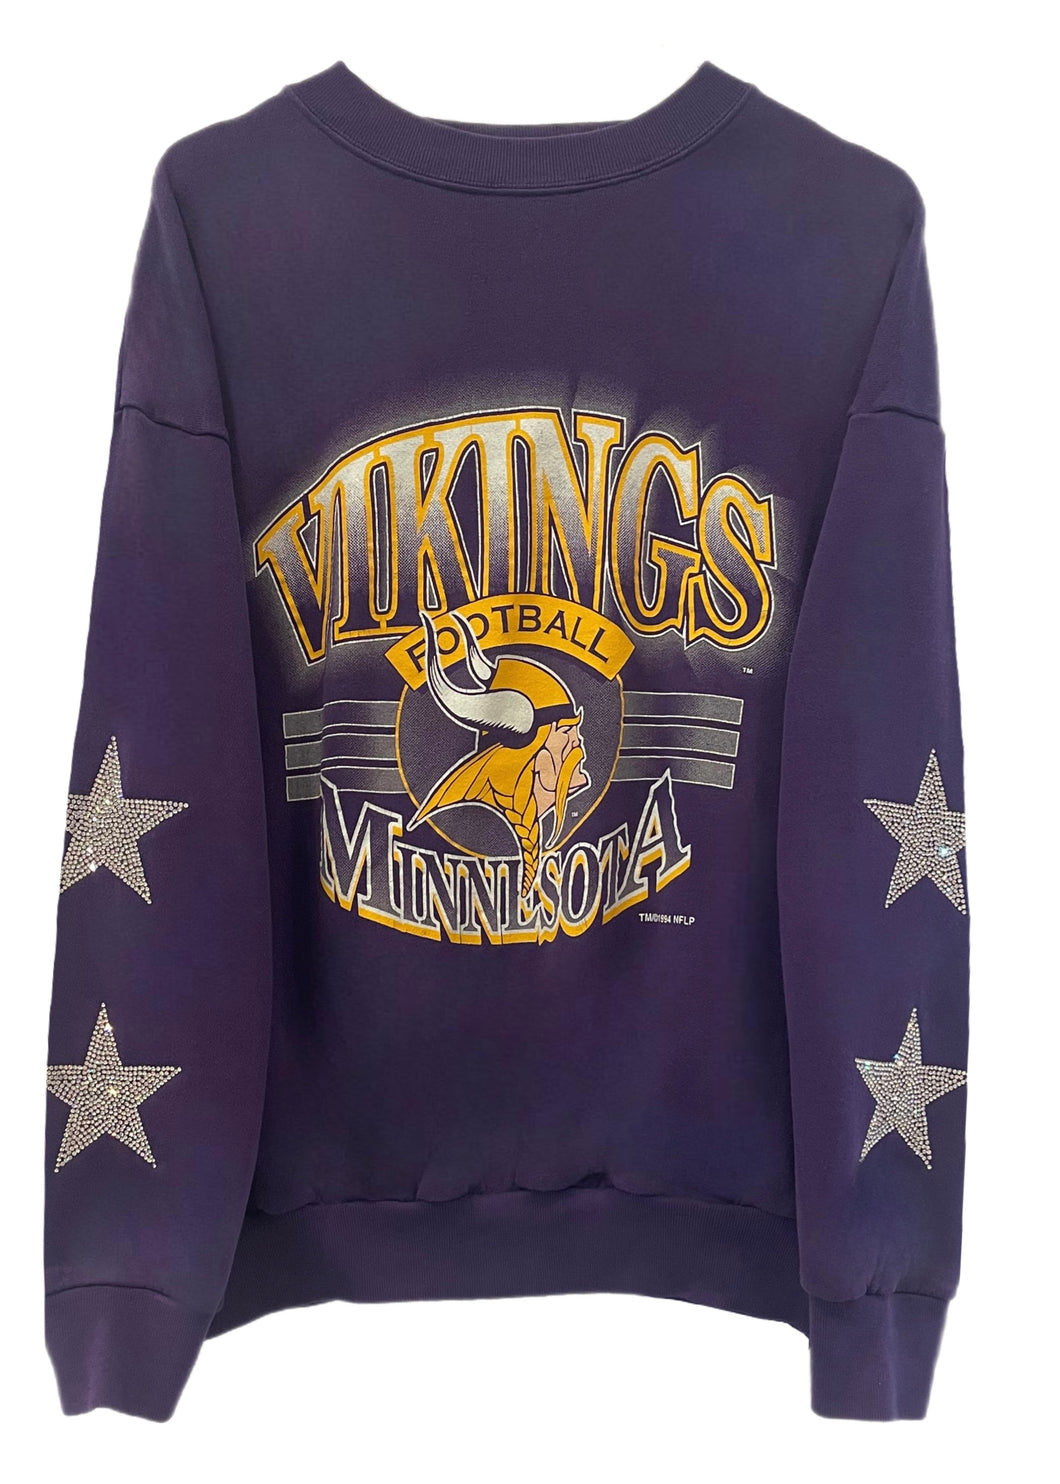 Minnesota Vikings, NFL One of a KIND Vintage Sweatshirt with Crystal Star Design